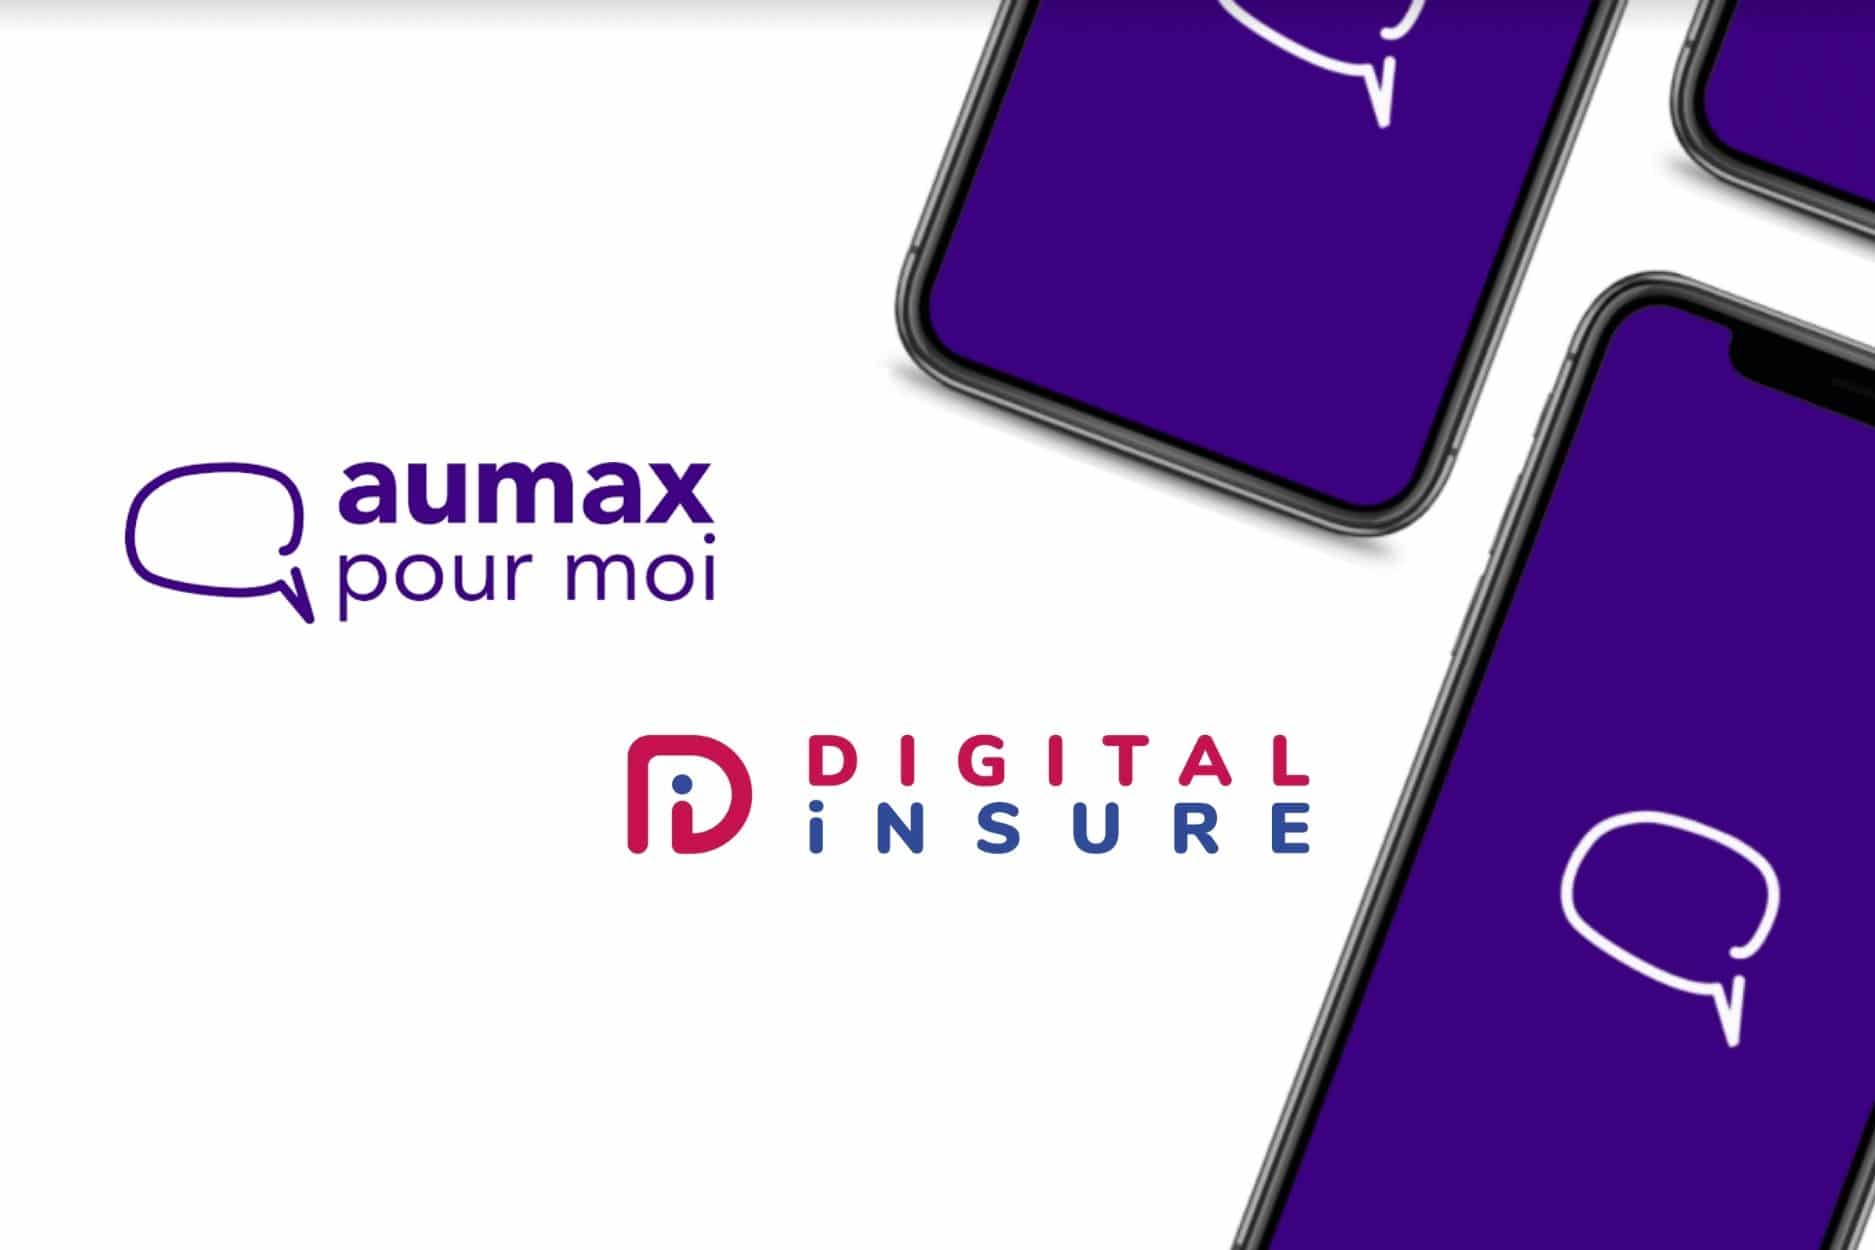 Aumax pour moi, Digital Insure, lancement partenariat assurance emprunteur